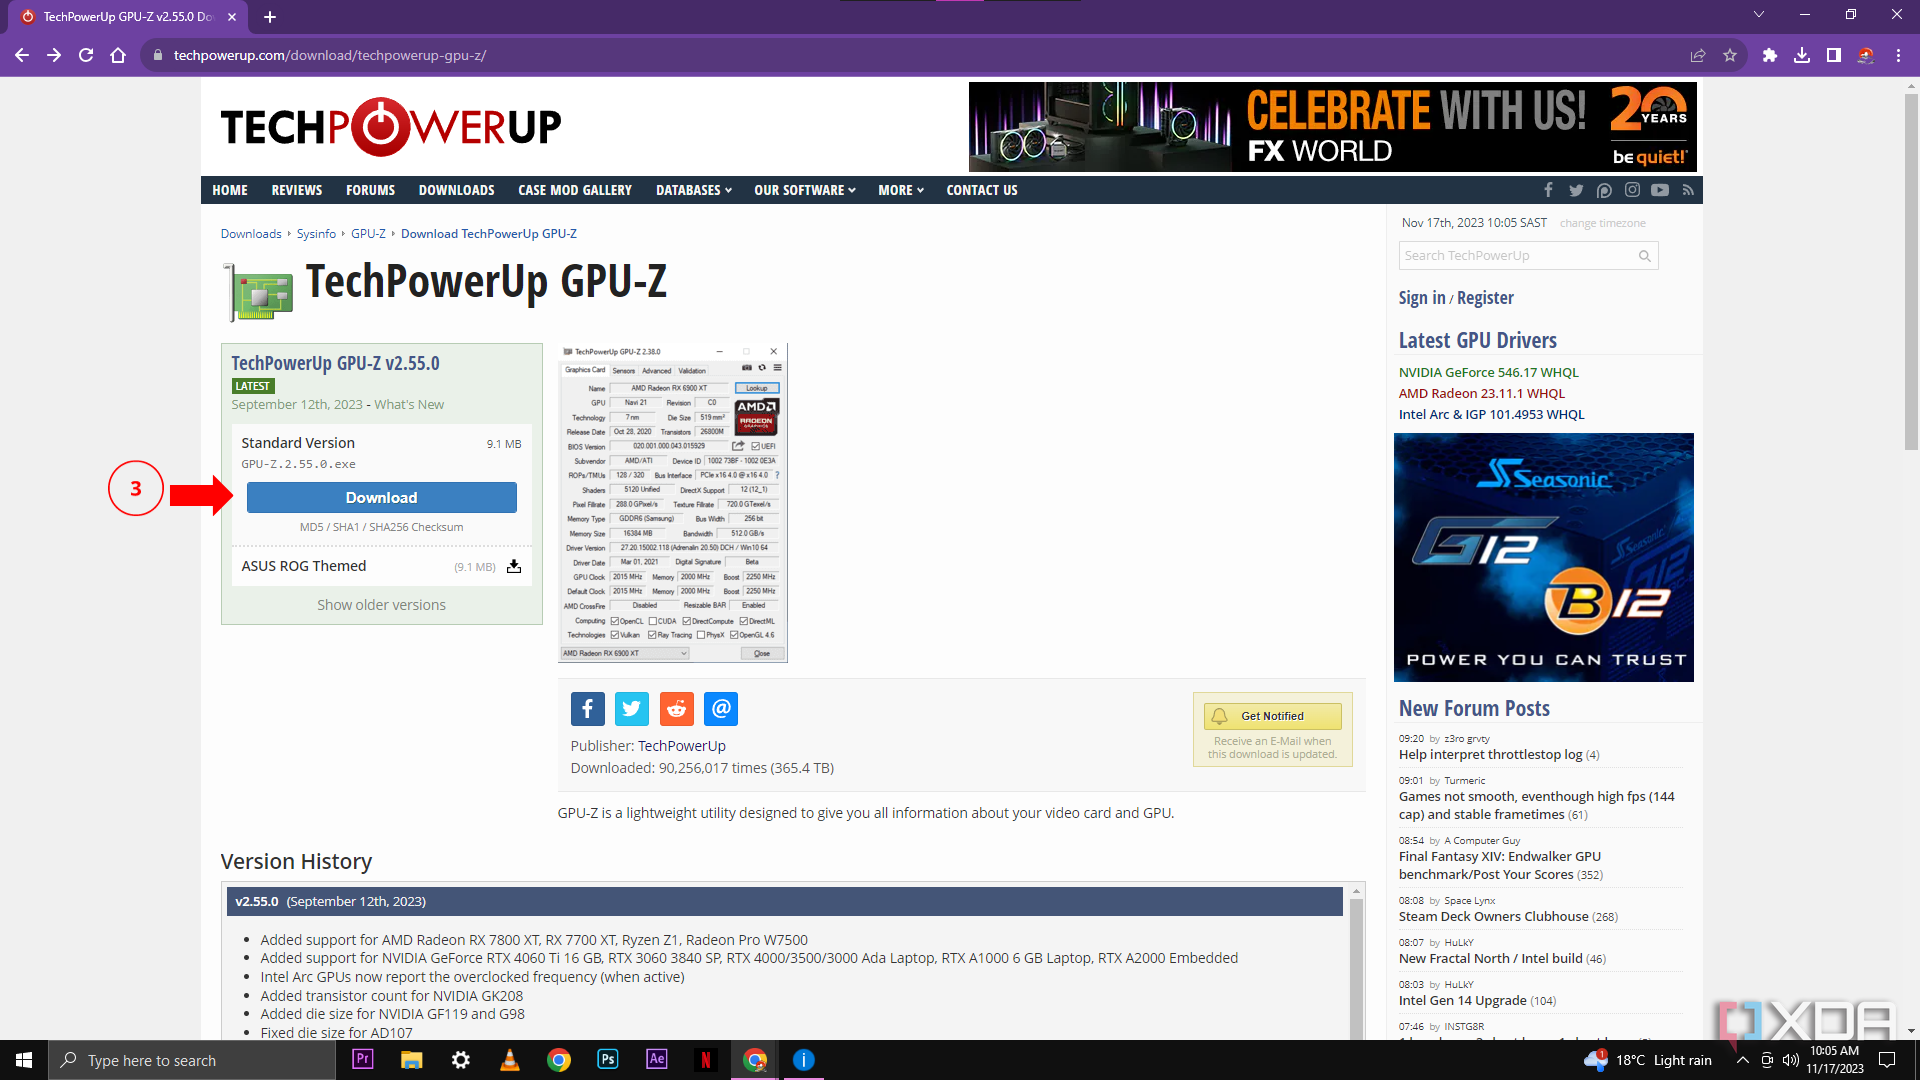 Изображение страницы загрузки GPU-Z с красной стрелкой, указывающей на кнопку «Загрузить» для стандартной версии TechPowerUp GPU-Z v2.55.0, с подробной информацией о размере файла и истории версий.